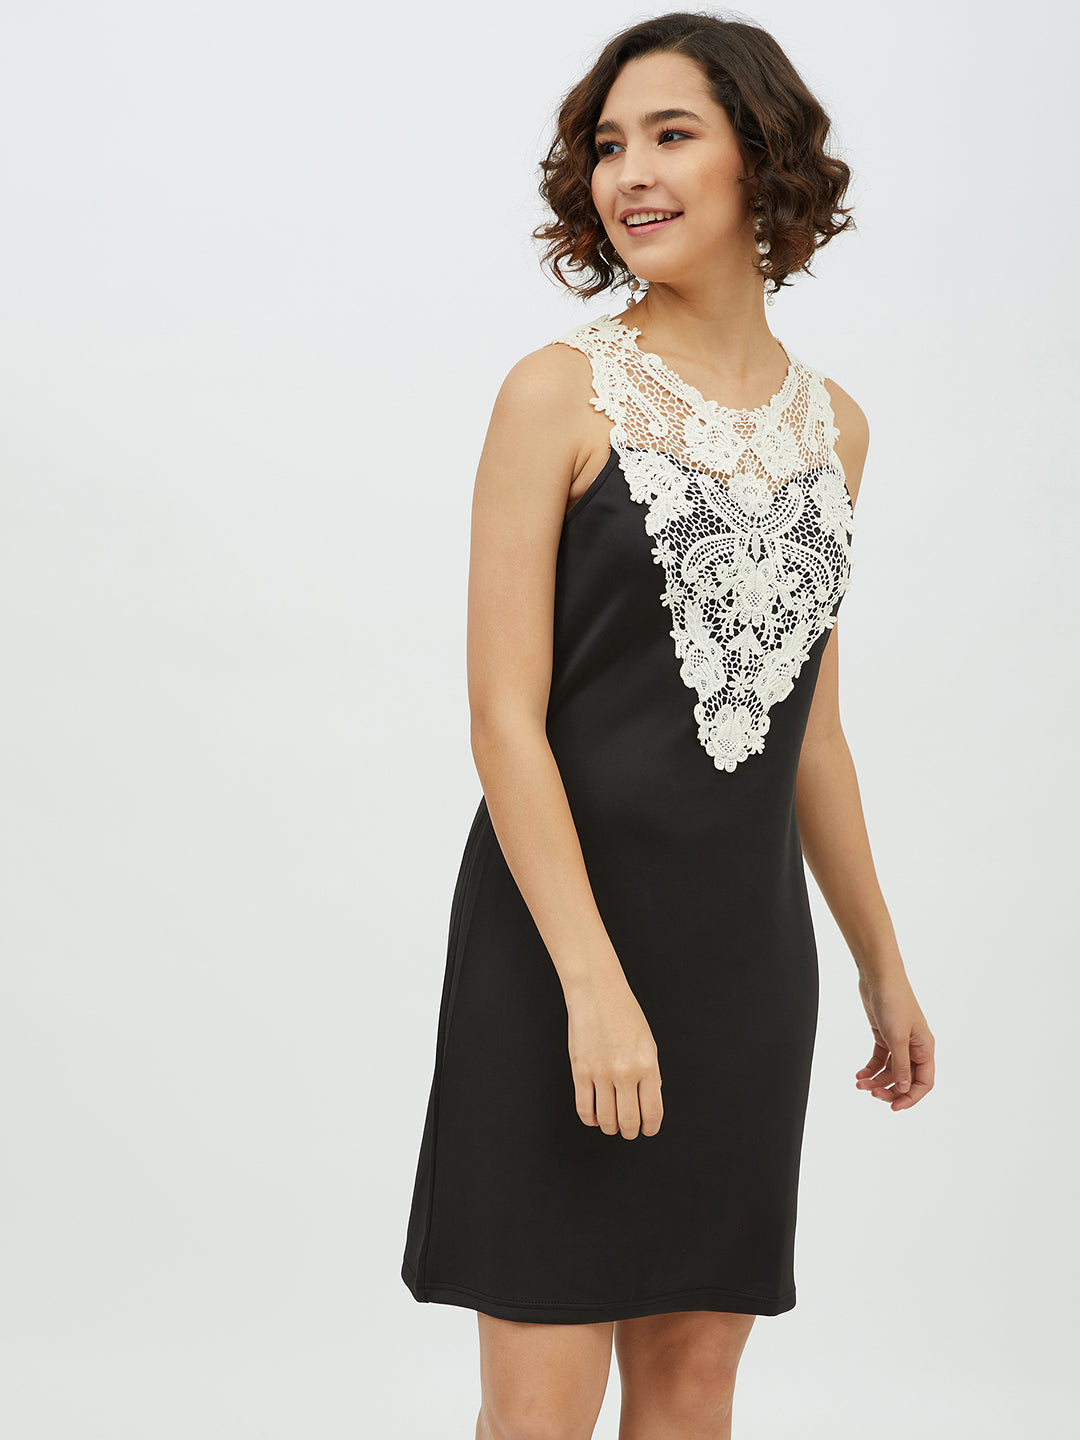 Women's Crochet Lace Black Dress